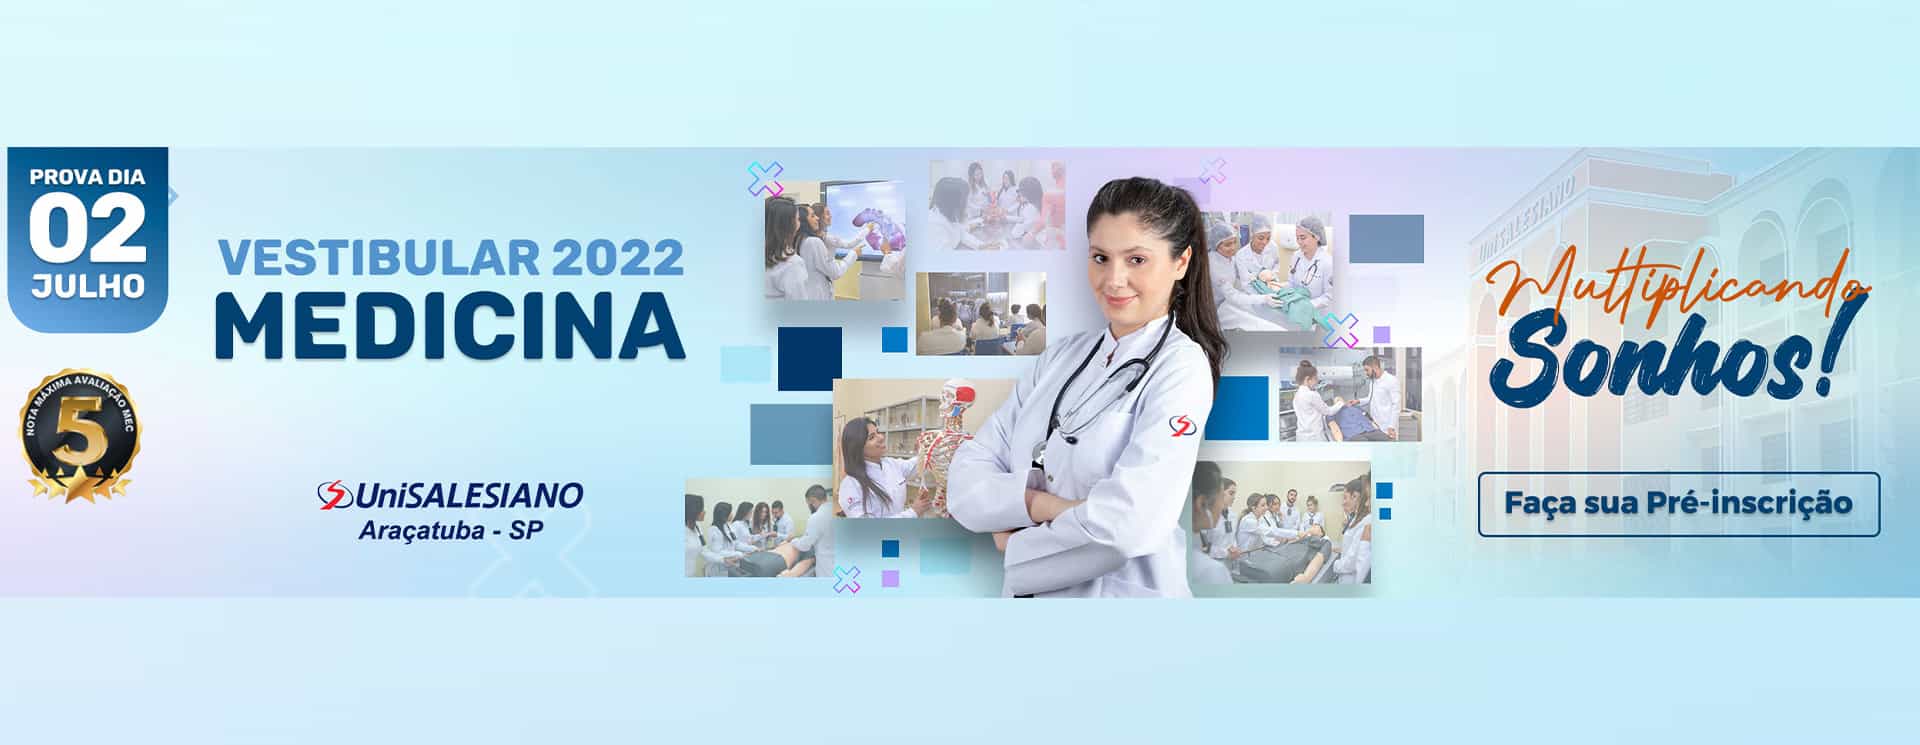 vestibular-medicina-2022-unisalesiano